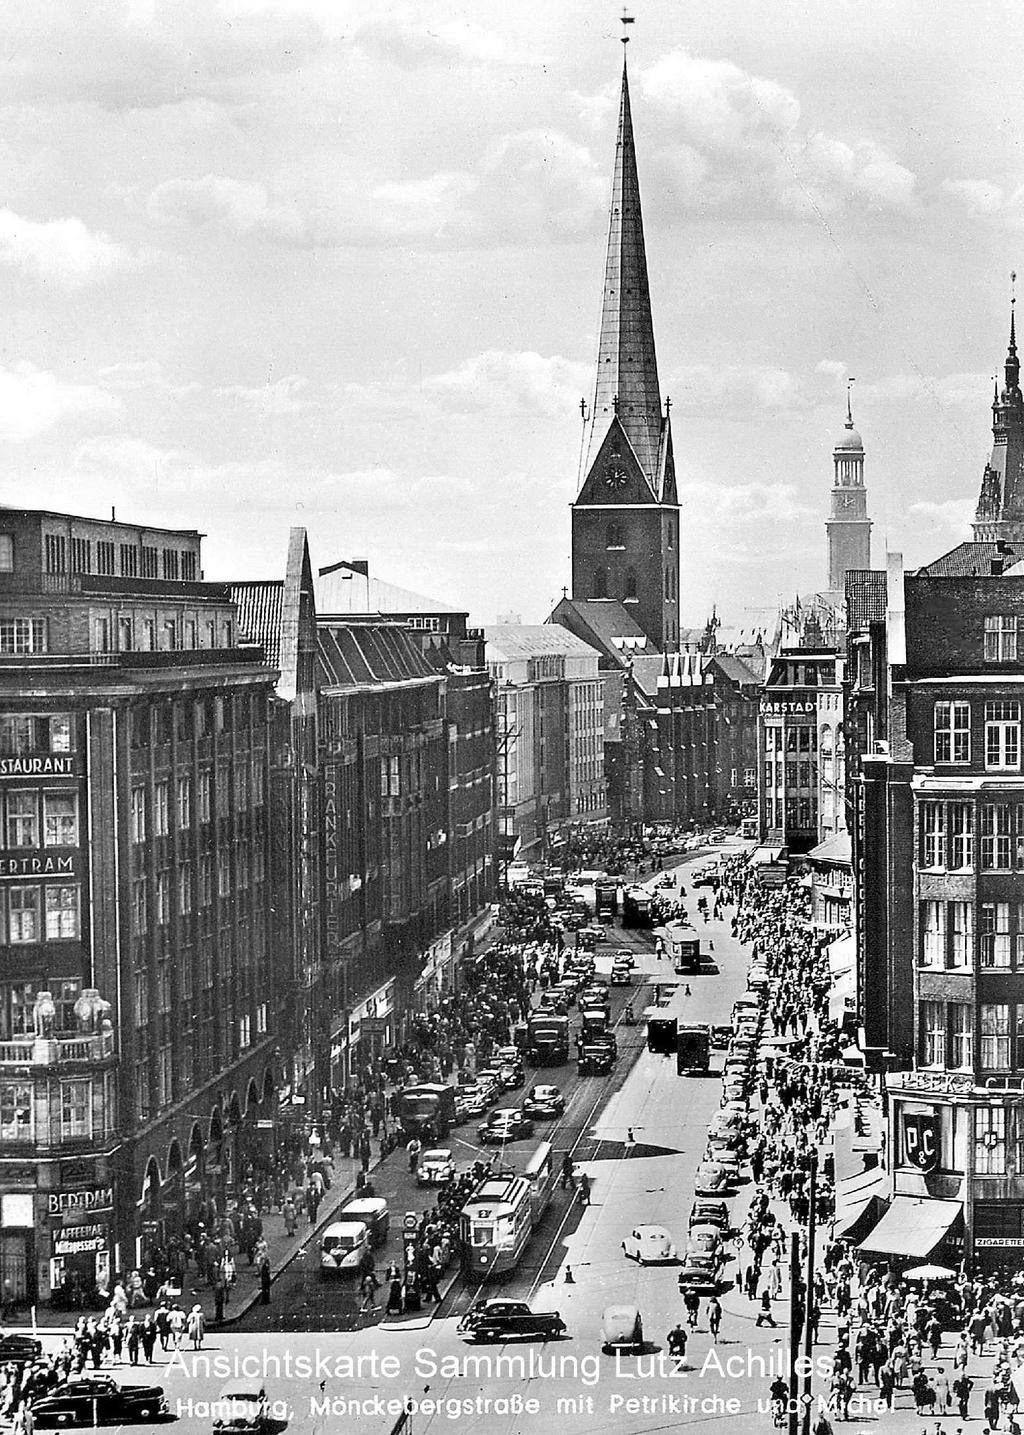 Gut zu erkennen ist der hektische Großstadtverkehr, der sich in den 1950er Jahren